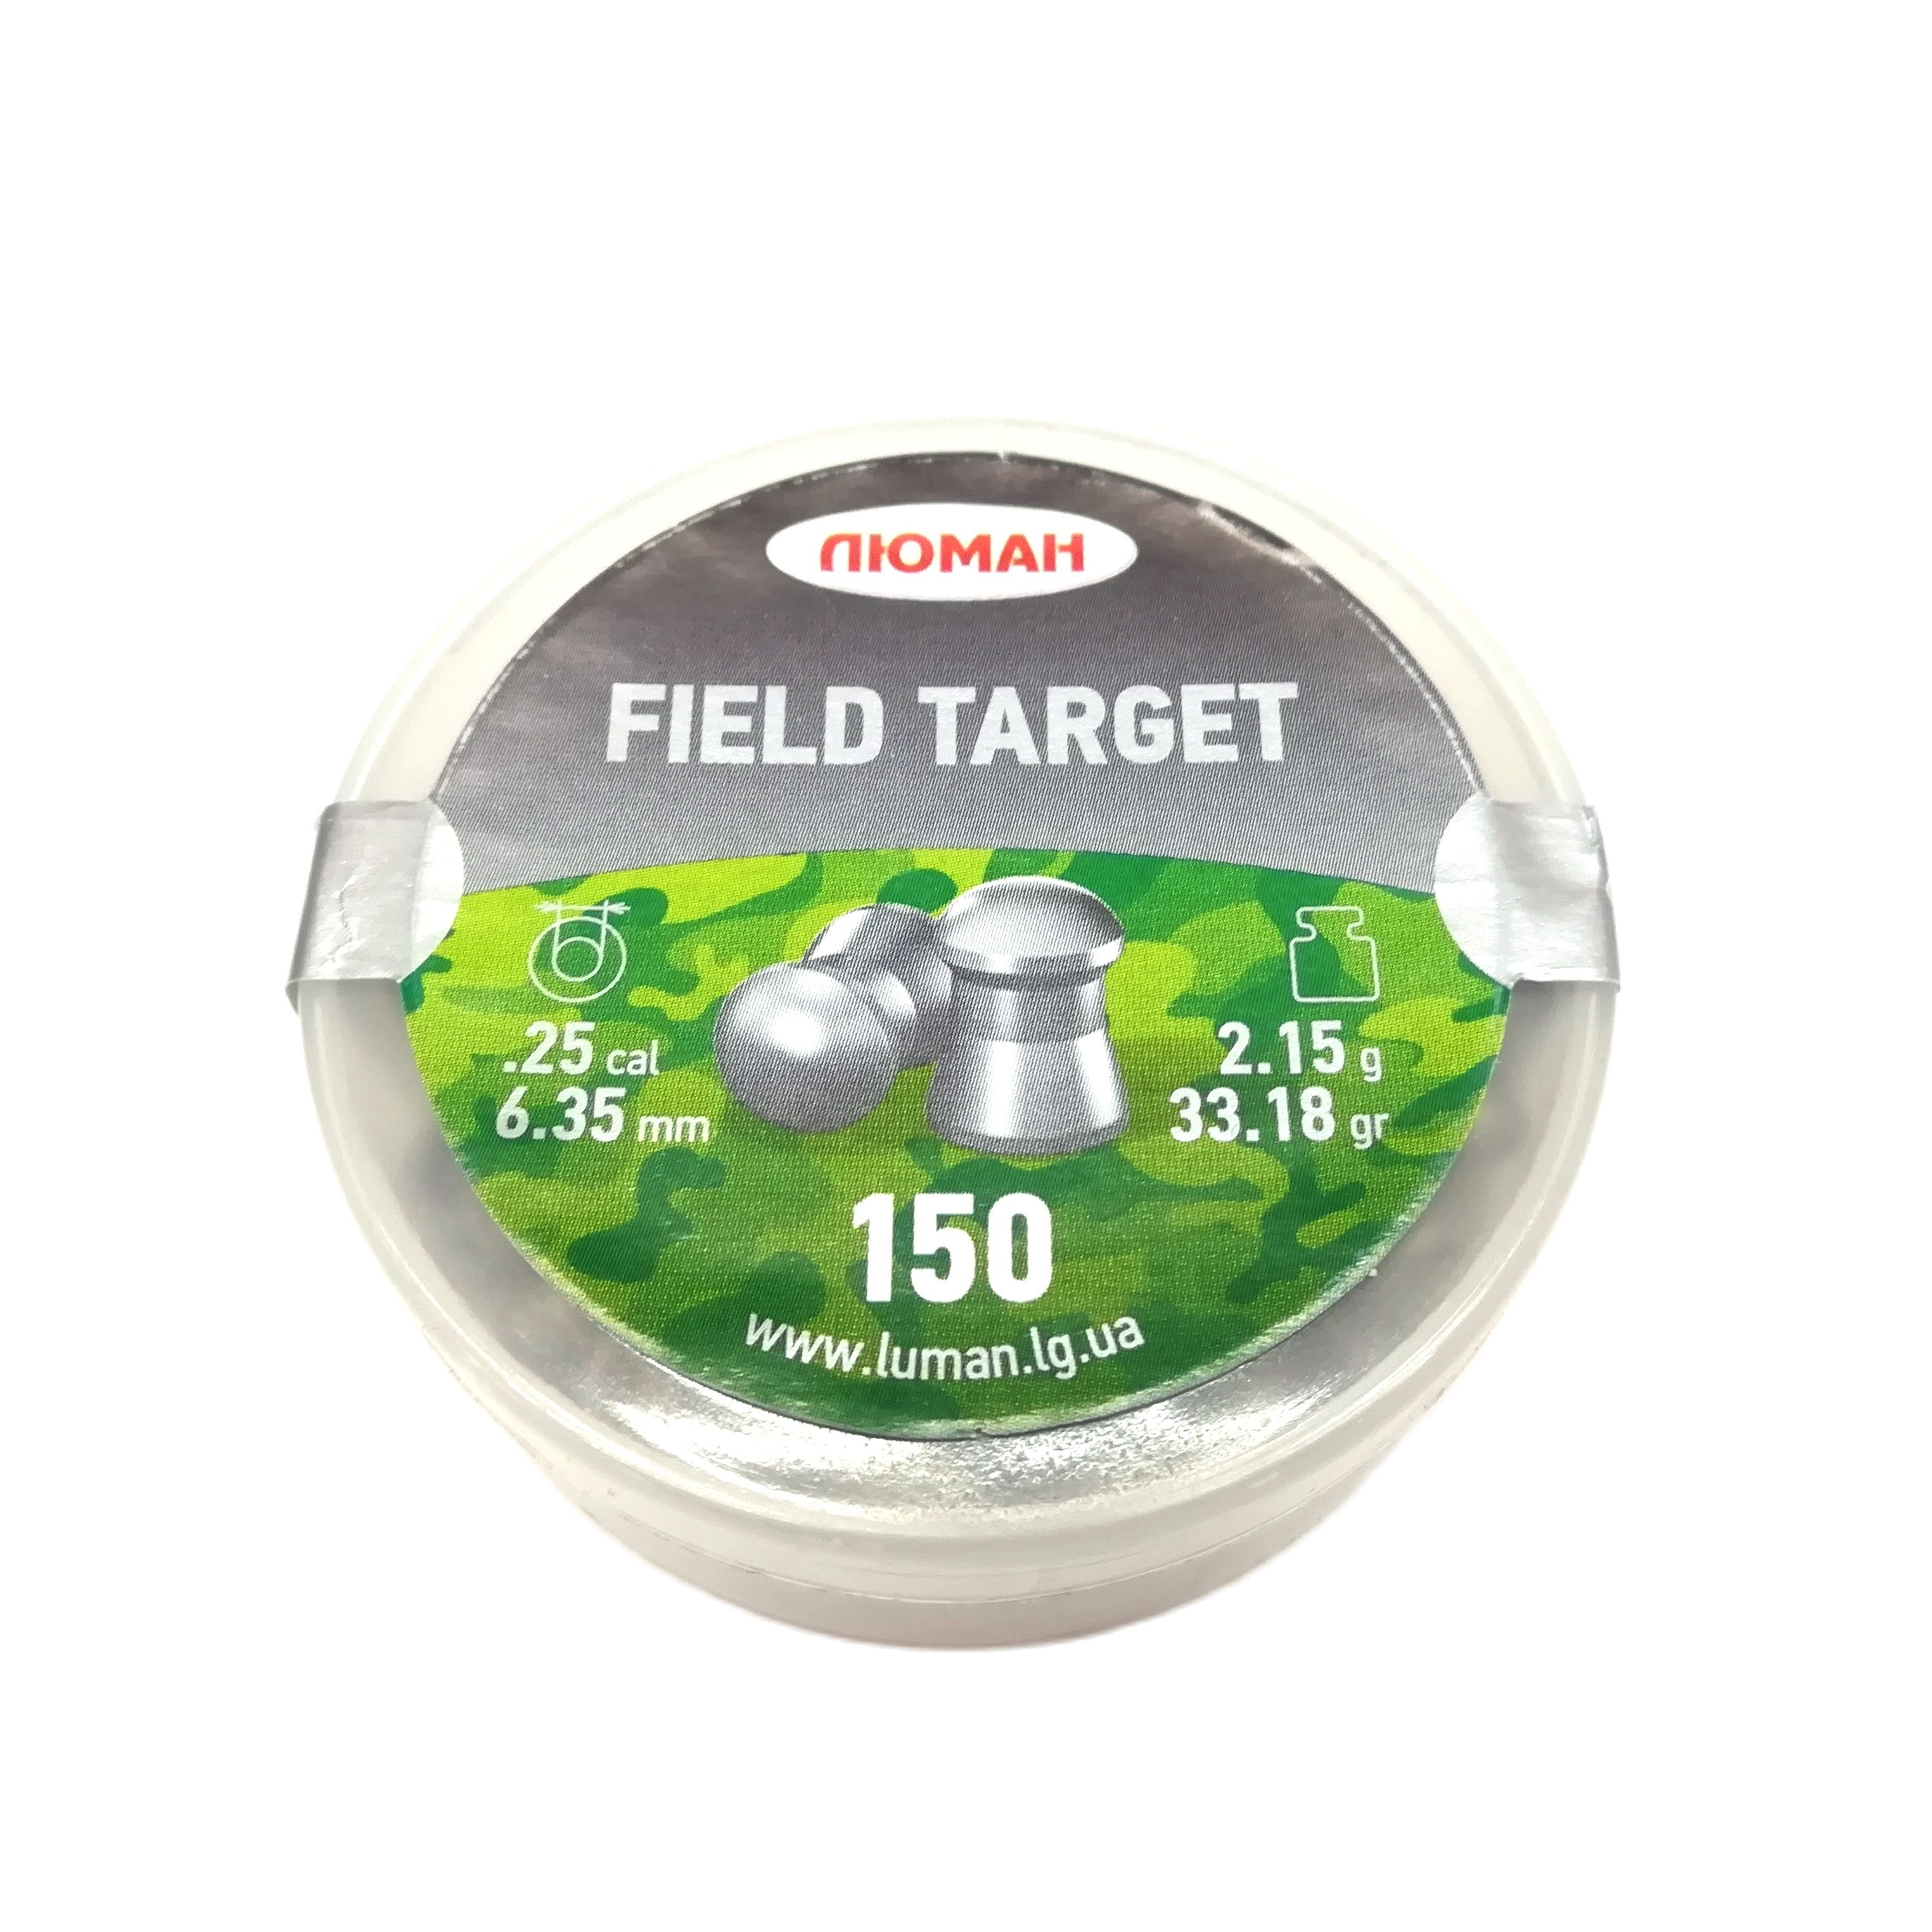  "" Field Target, .6,35., 2,15.  150.